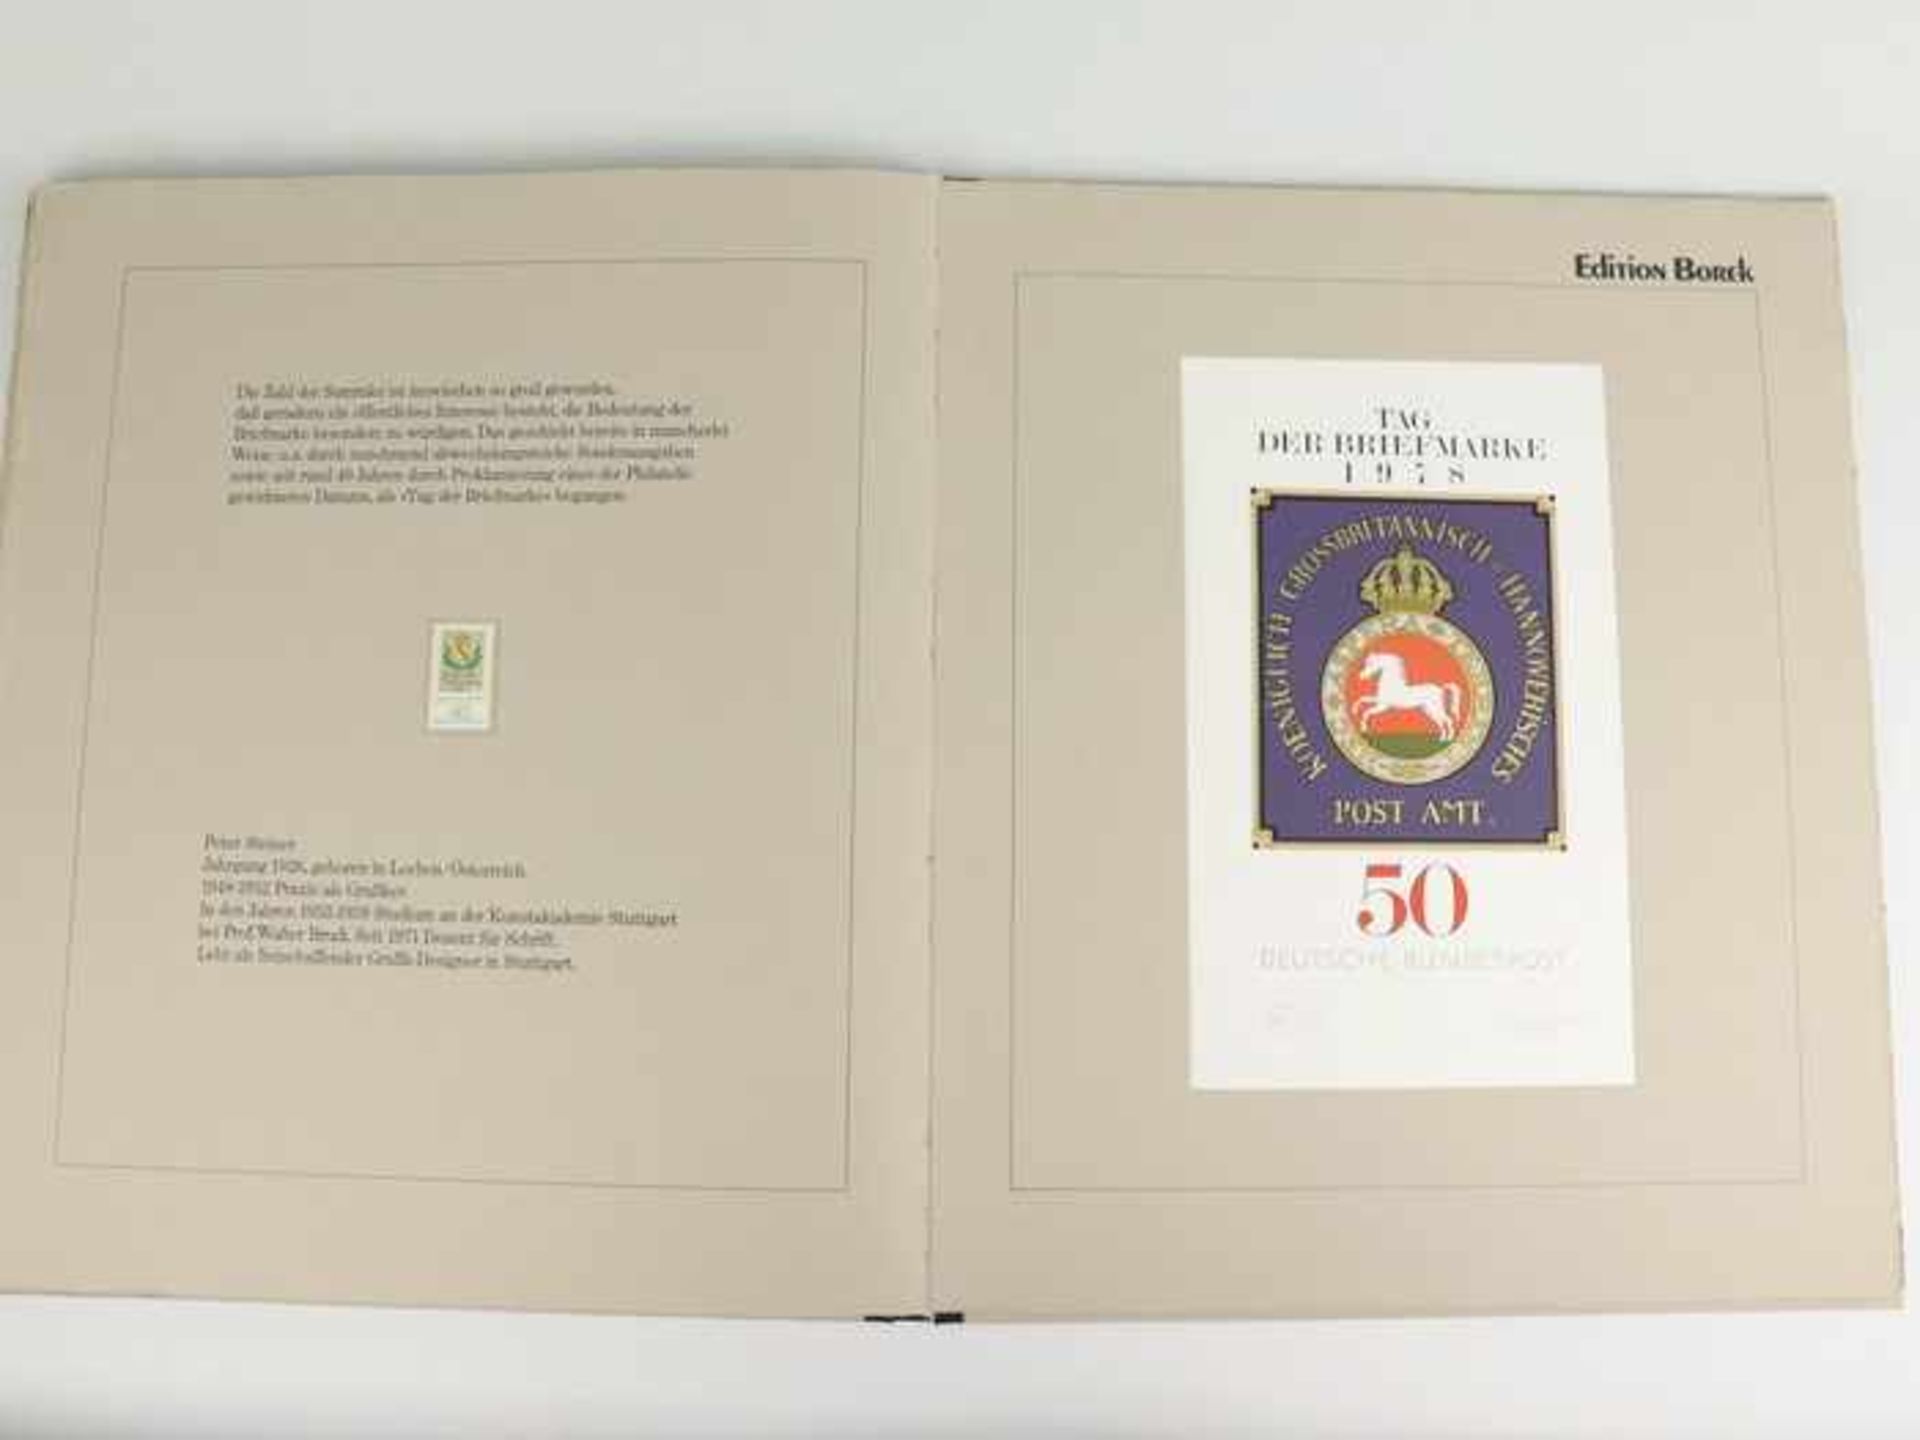 Borek, Henning (Hg.)"Edition Borek - Briefmarken Graphik 78", Braunschweig Eigenverlag 1978, 12 - Bild 4 aus 4